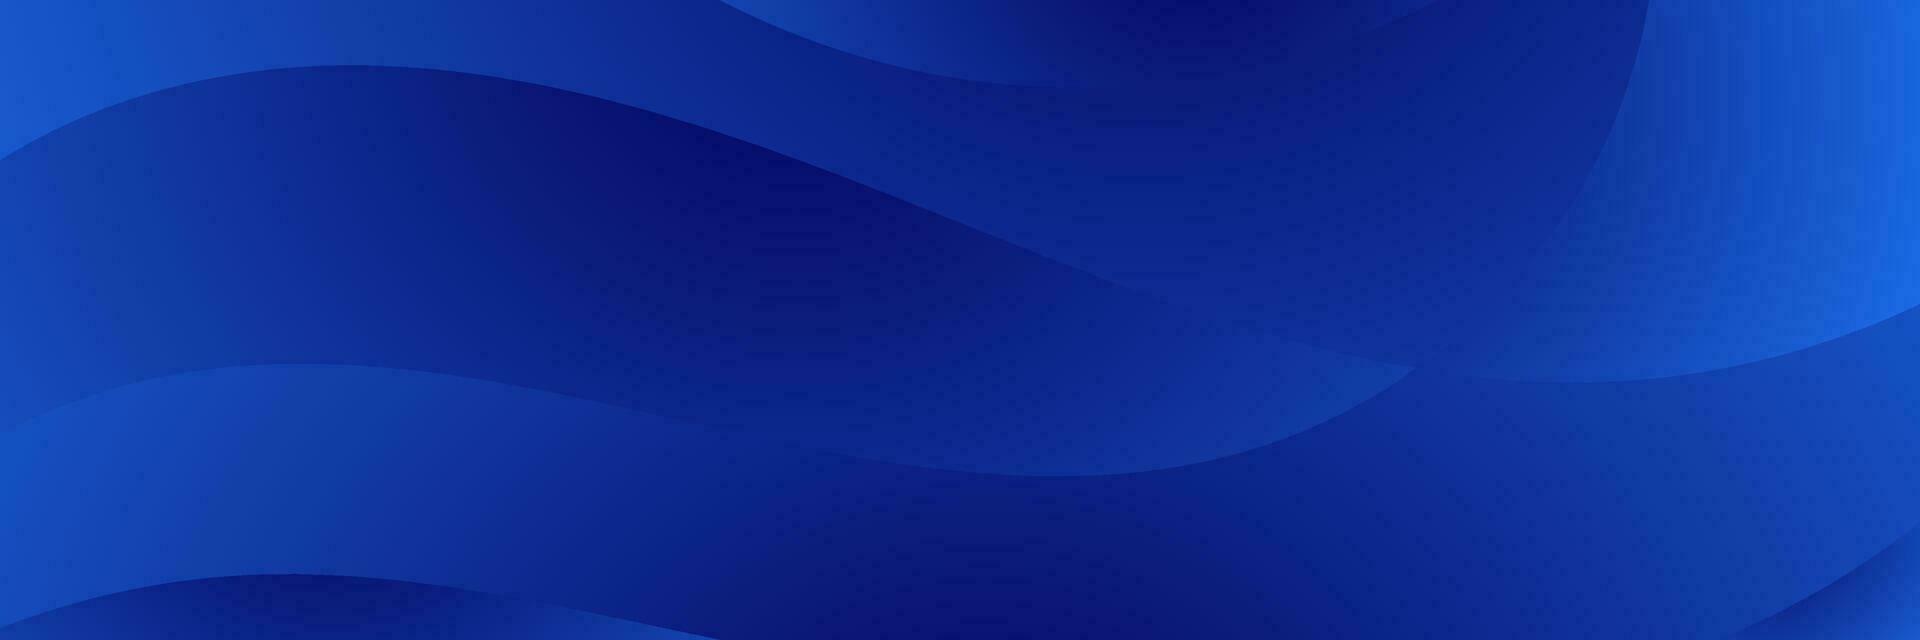 Blau Gradient Welle Hintergrund vektor